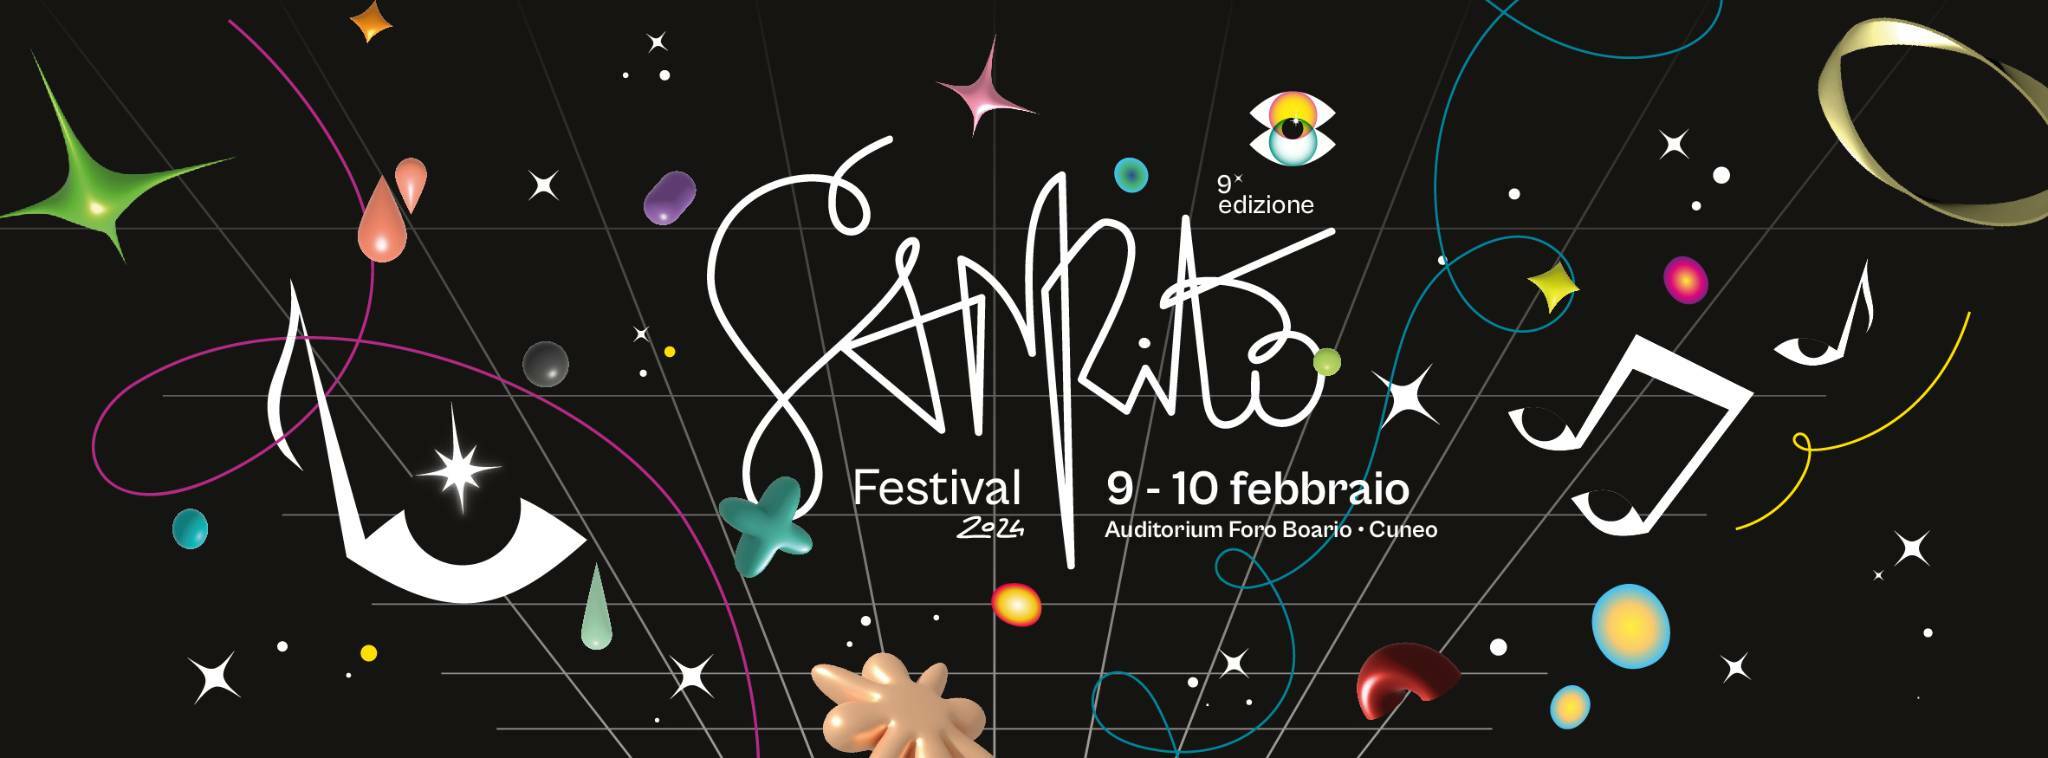 Meno di un mese alla chiusura del bando per candidarsi al Sanrito Festival di Cuneo